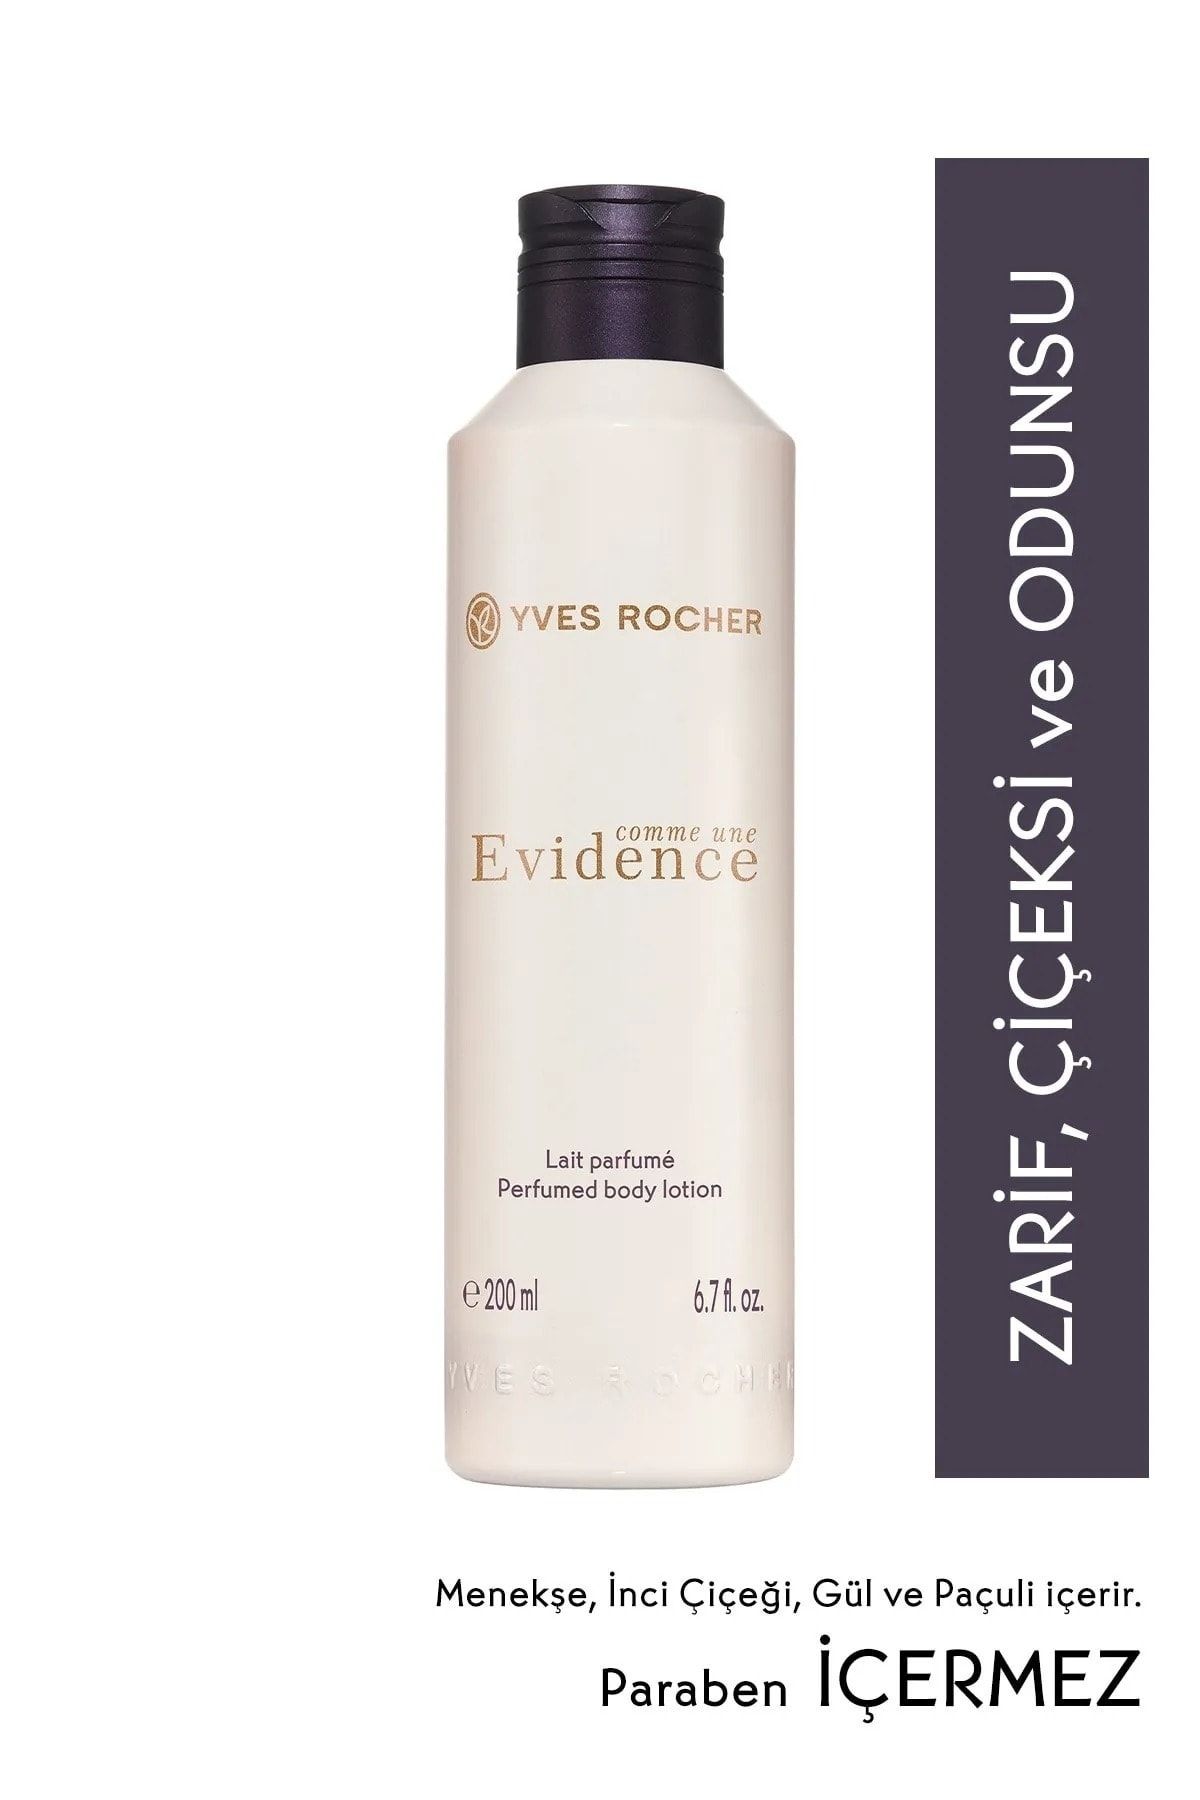 Yves Rocher Comme Une Evidence - Parfümlü Vücut Sütü Uyum Ve Zarafeti Tüm Vücudunuzda Hissedin! 200 Ml